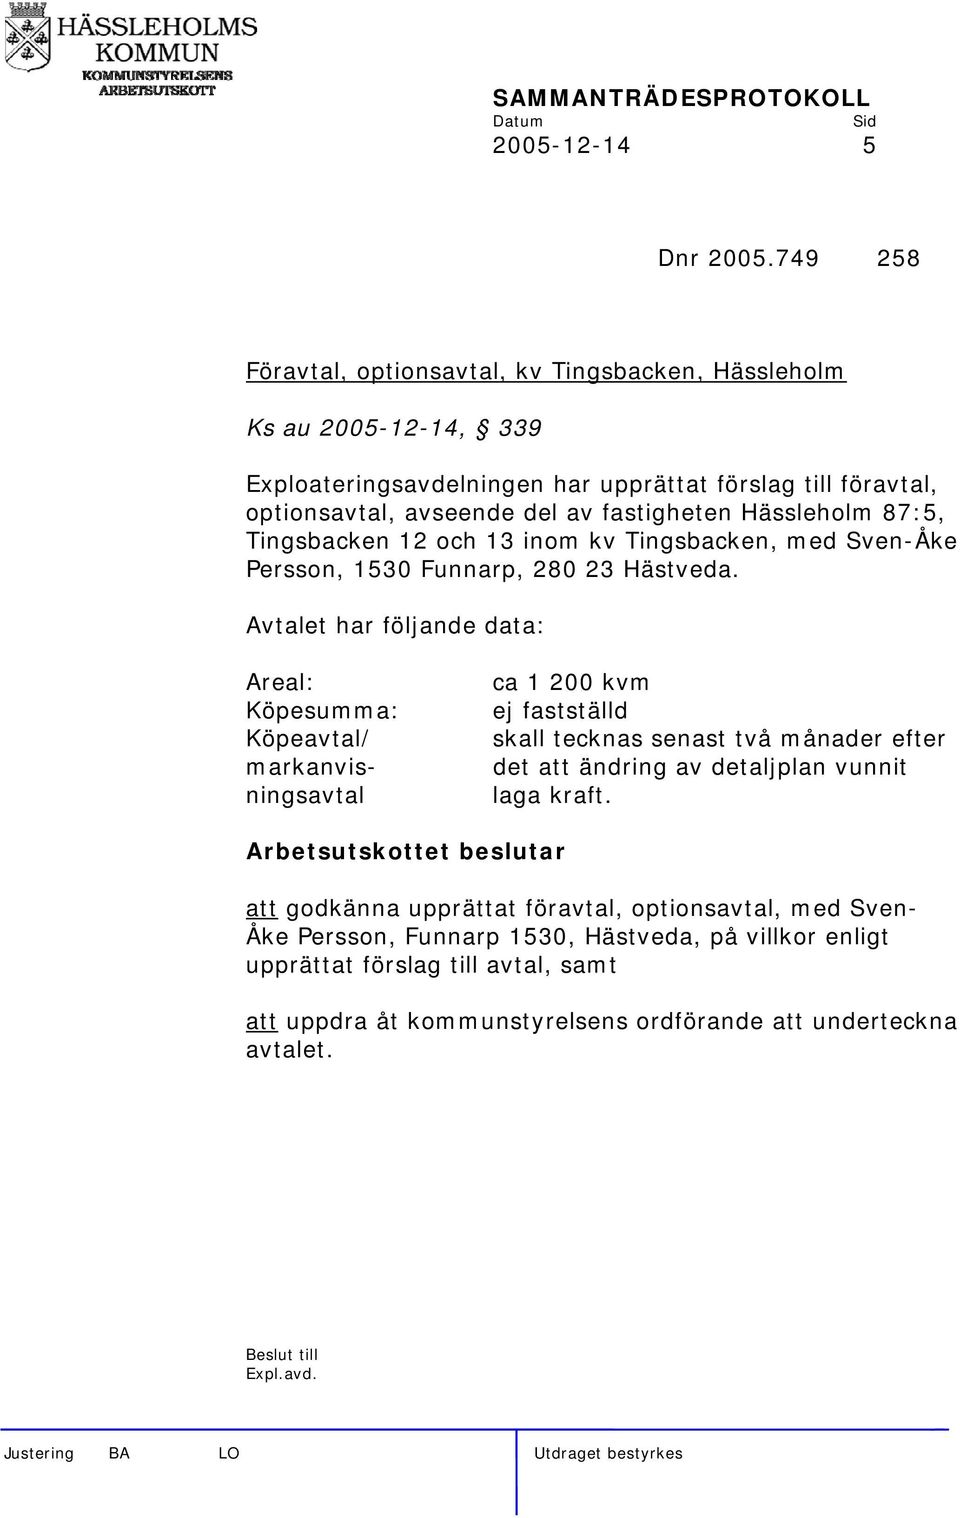 Hässleholm 87:5, Tingsbacken 12 och 13 inom kv Tingsbacken, med Sven-Åke Persson, 1530 Funnarp, 280 23 Hästveda.